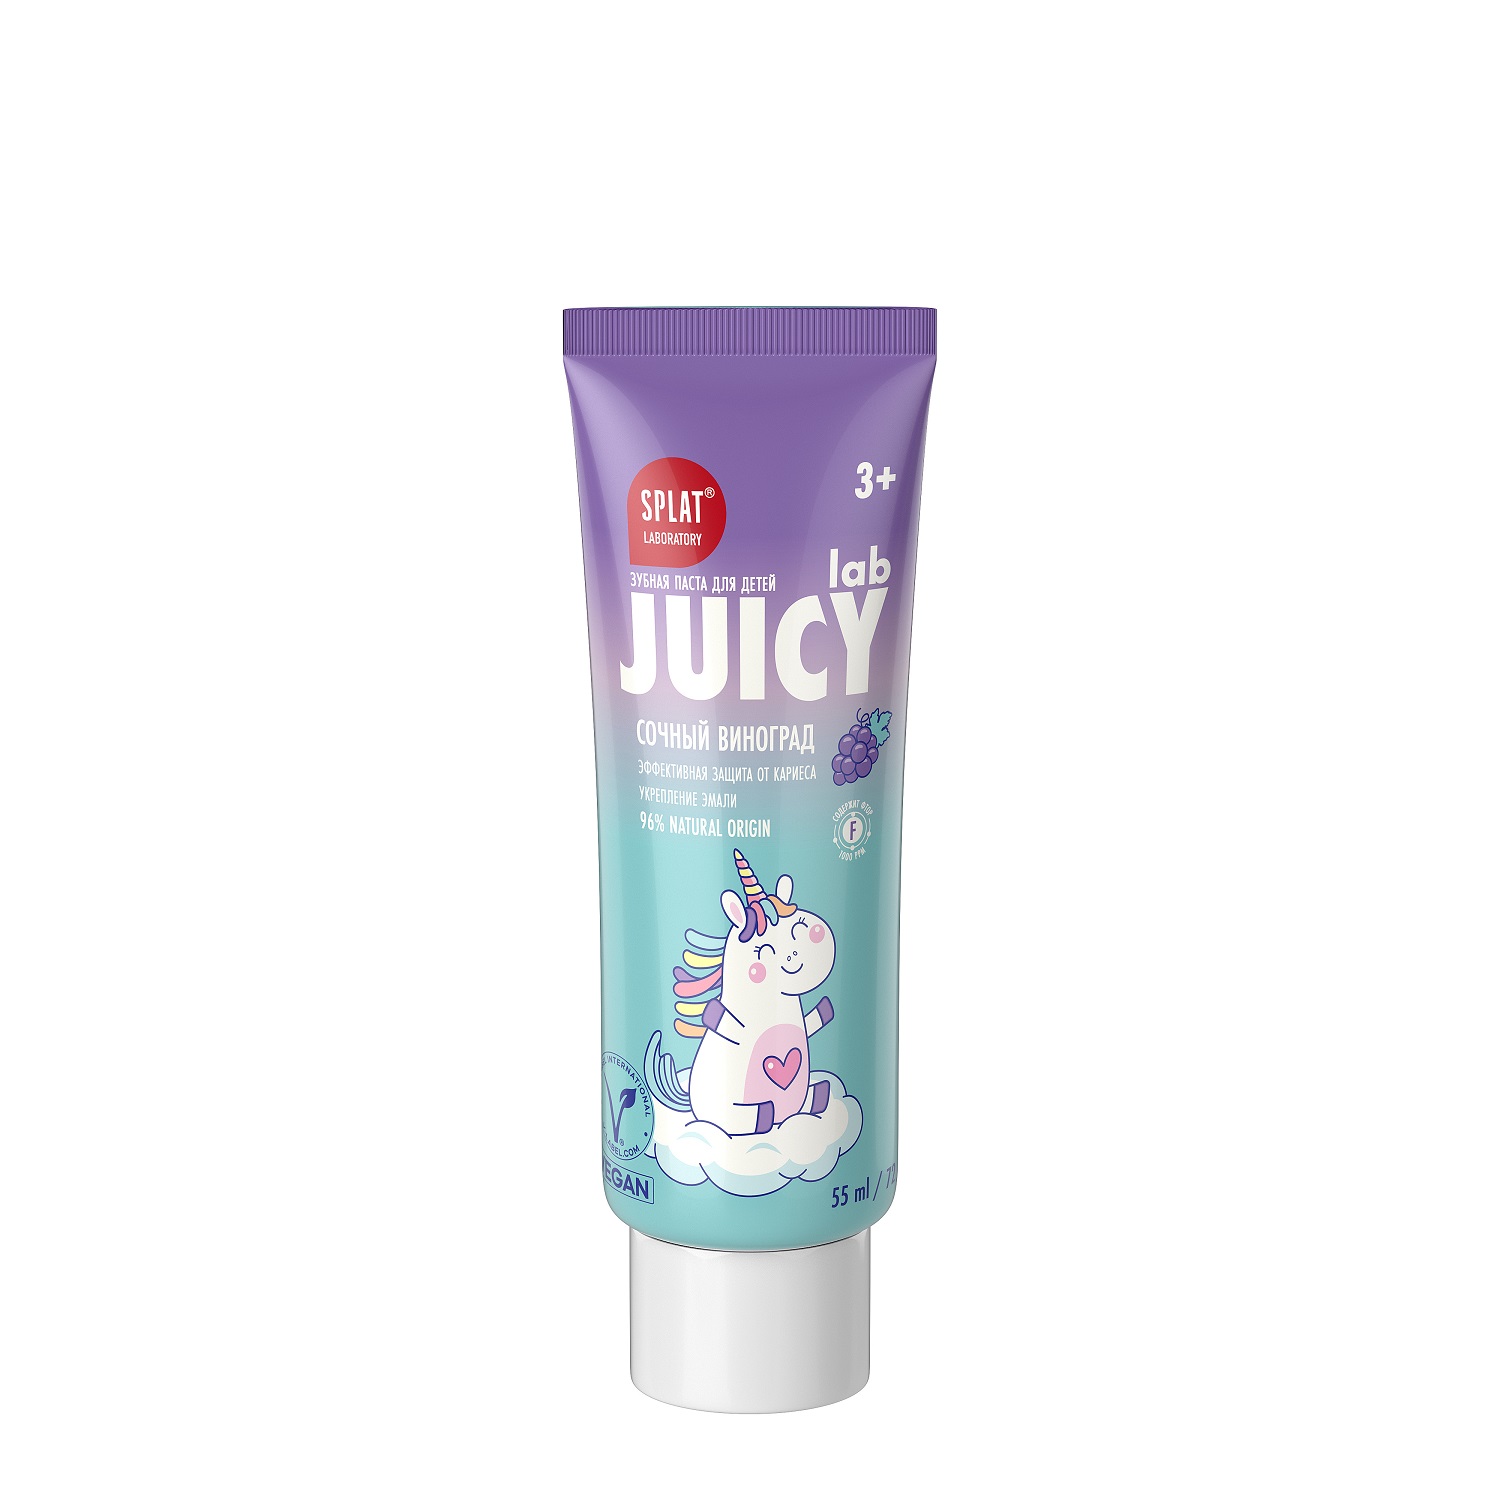 Splat Детская зубная паста со фтором и блестками Сочный виноград, 55 мл (Splat, Juicy) цена и фото